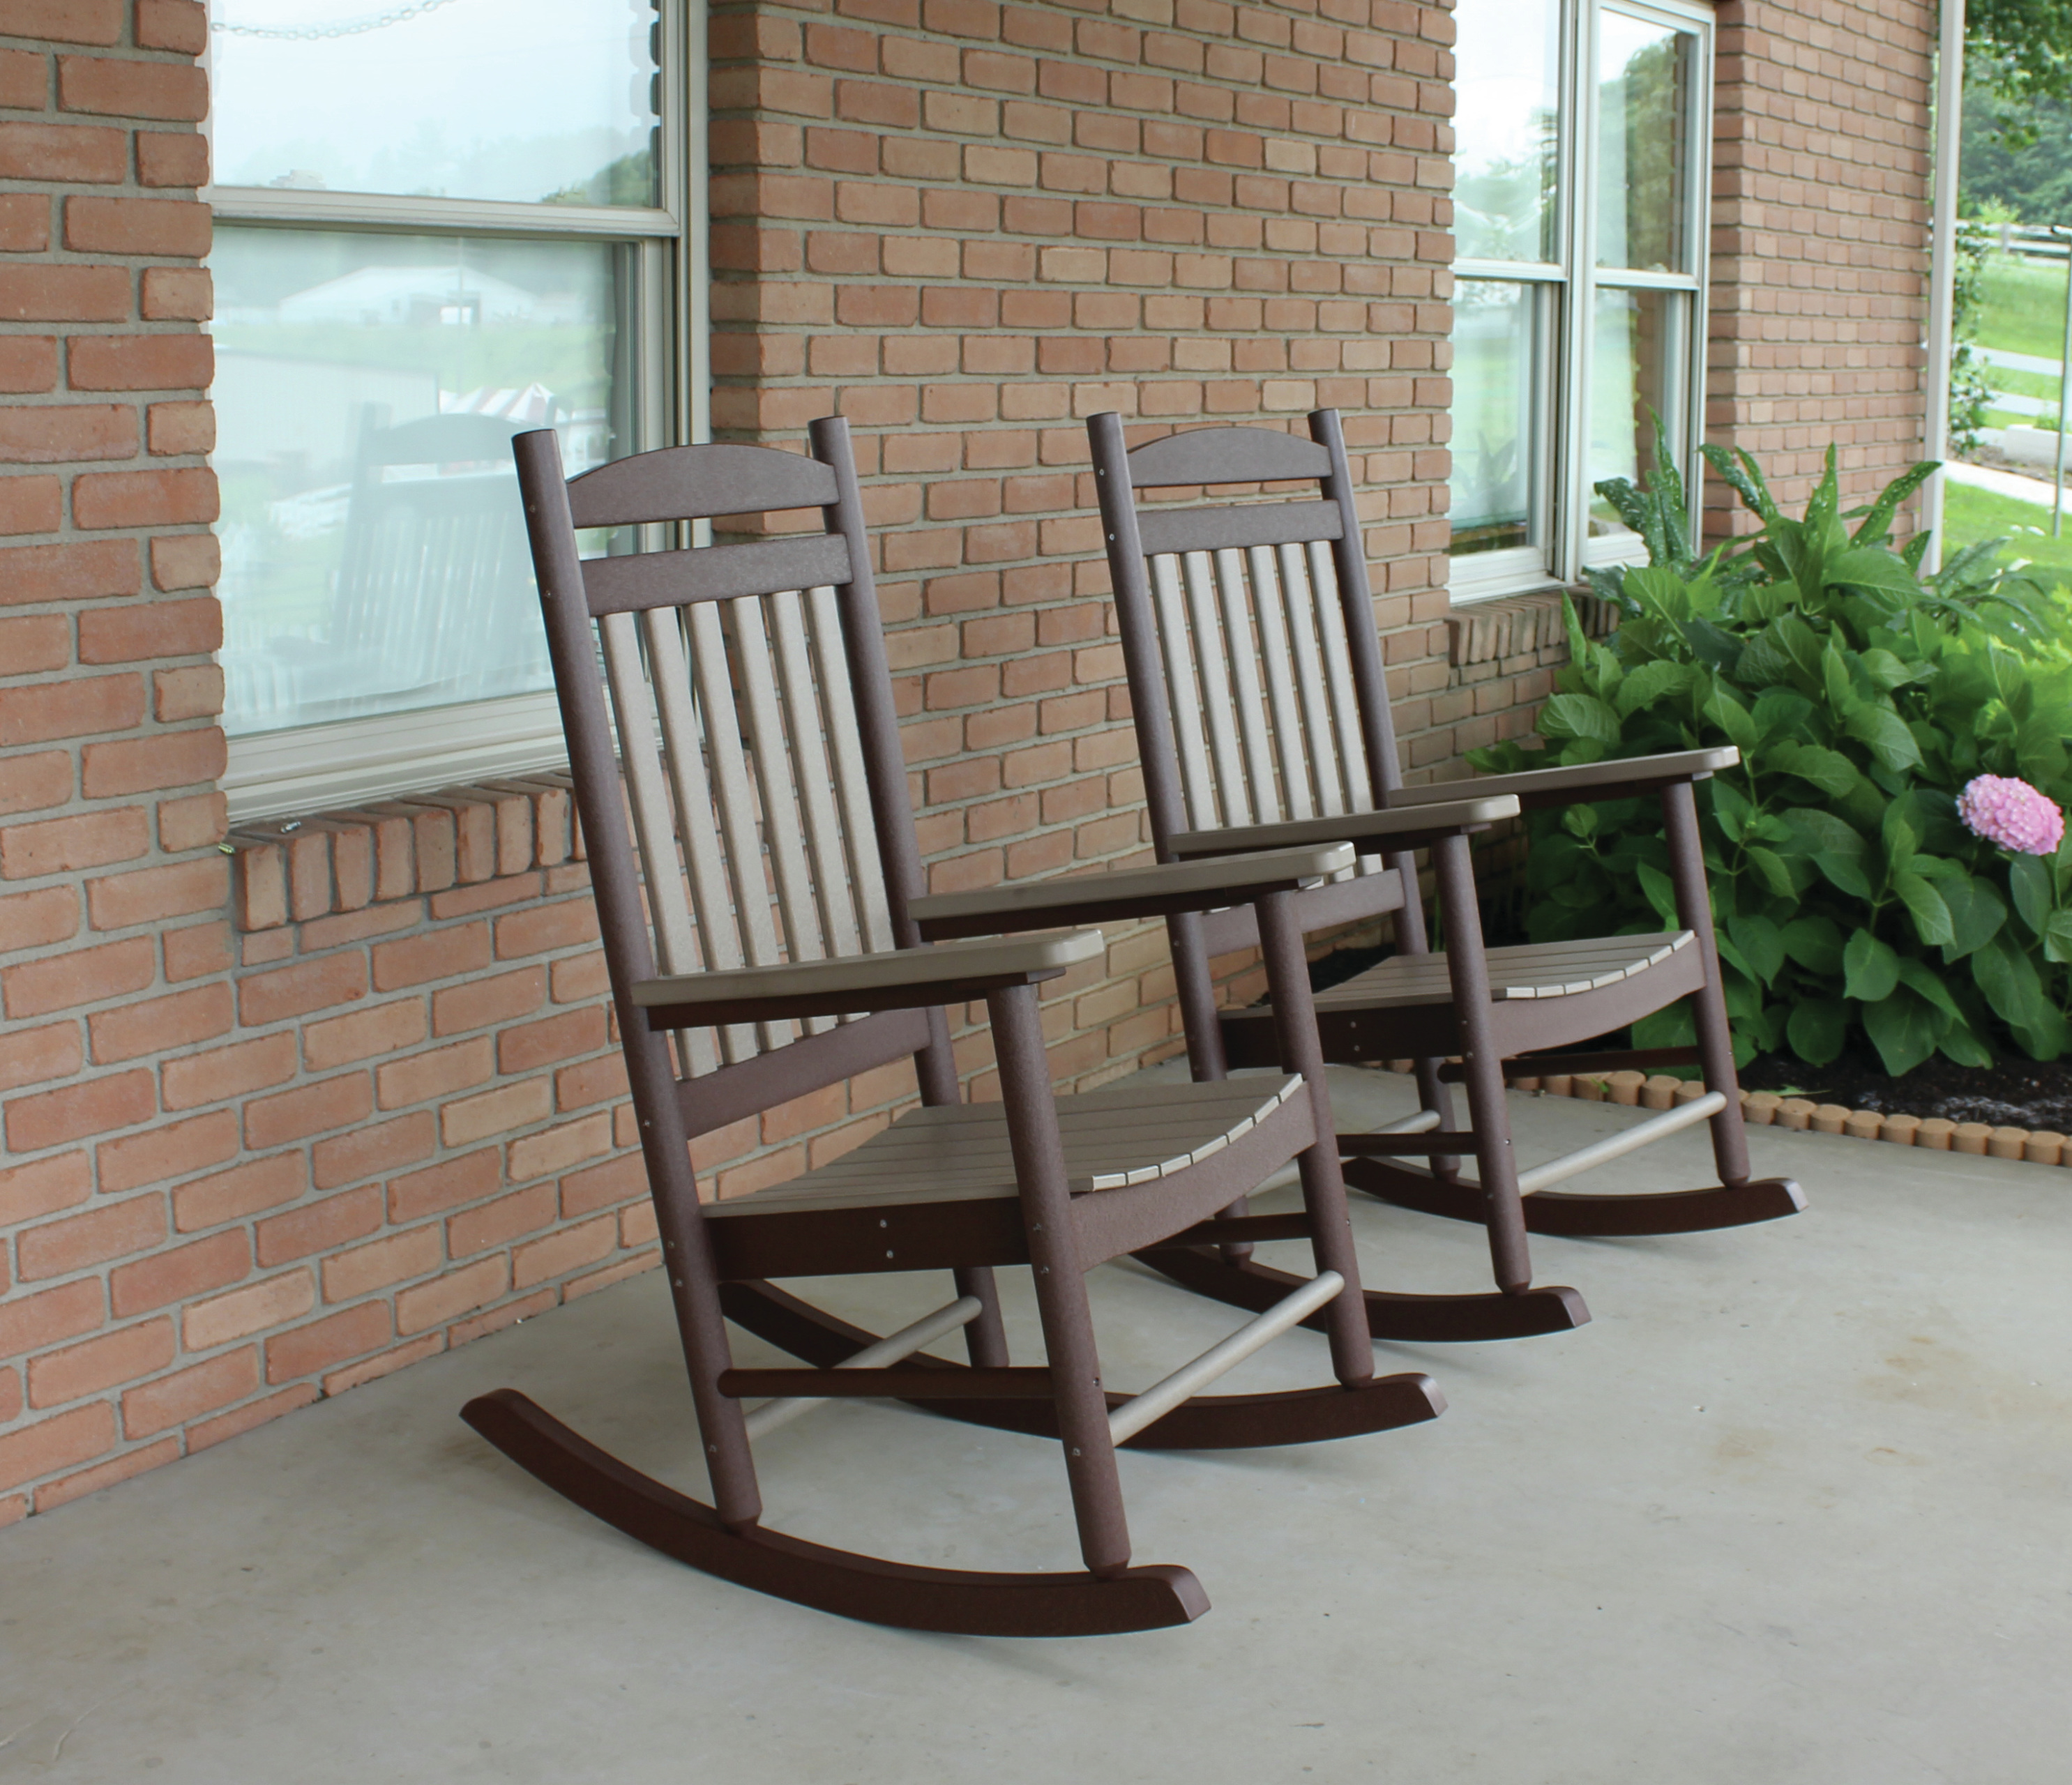 Porch Rocking Chair Modern Design Garden bench